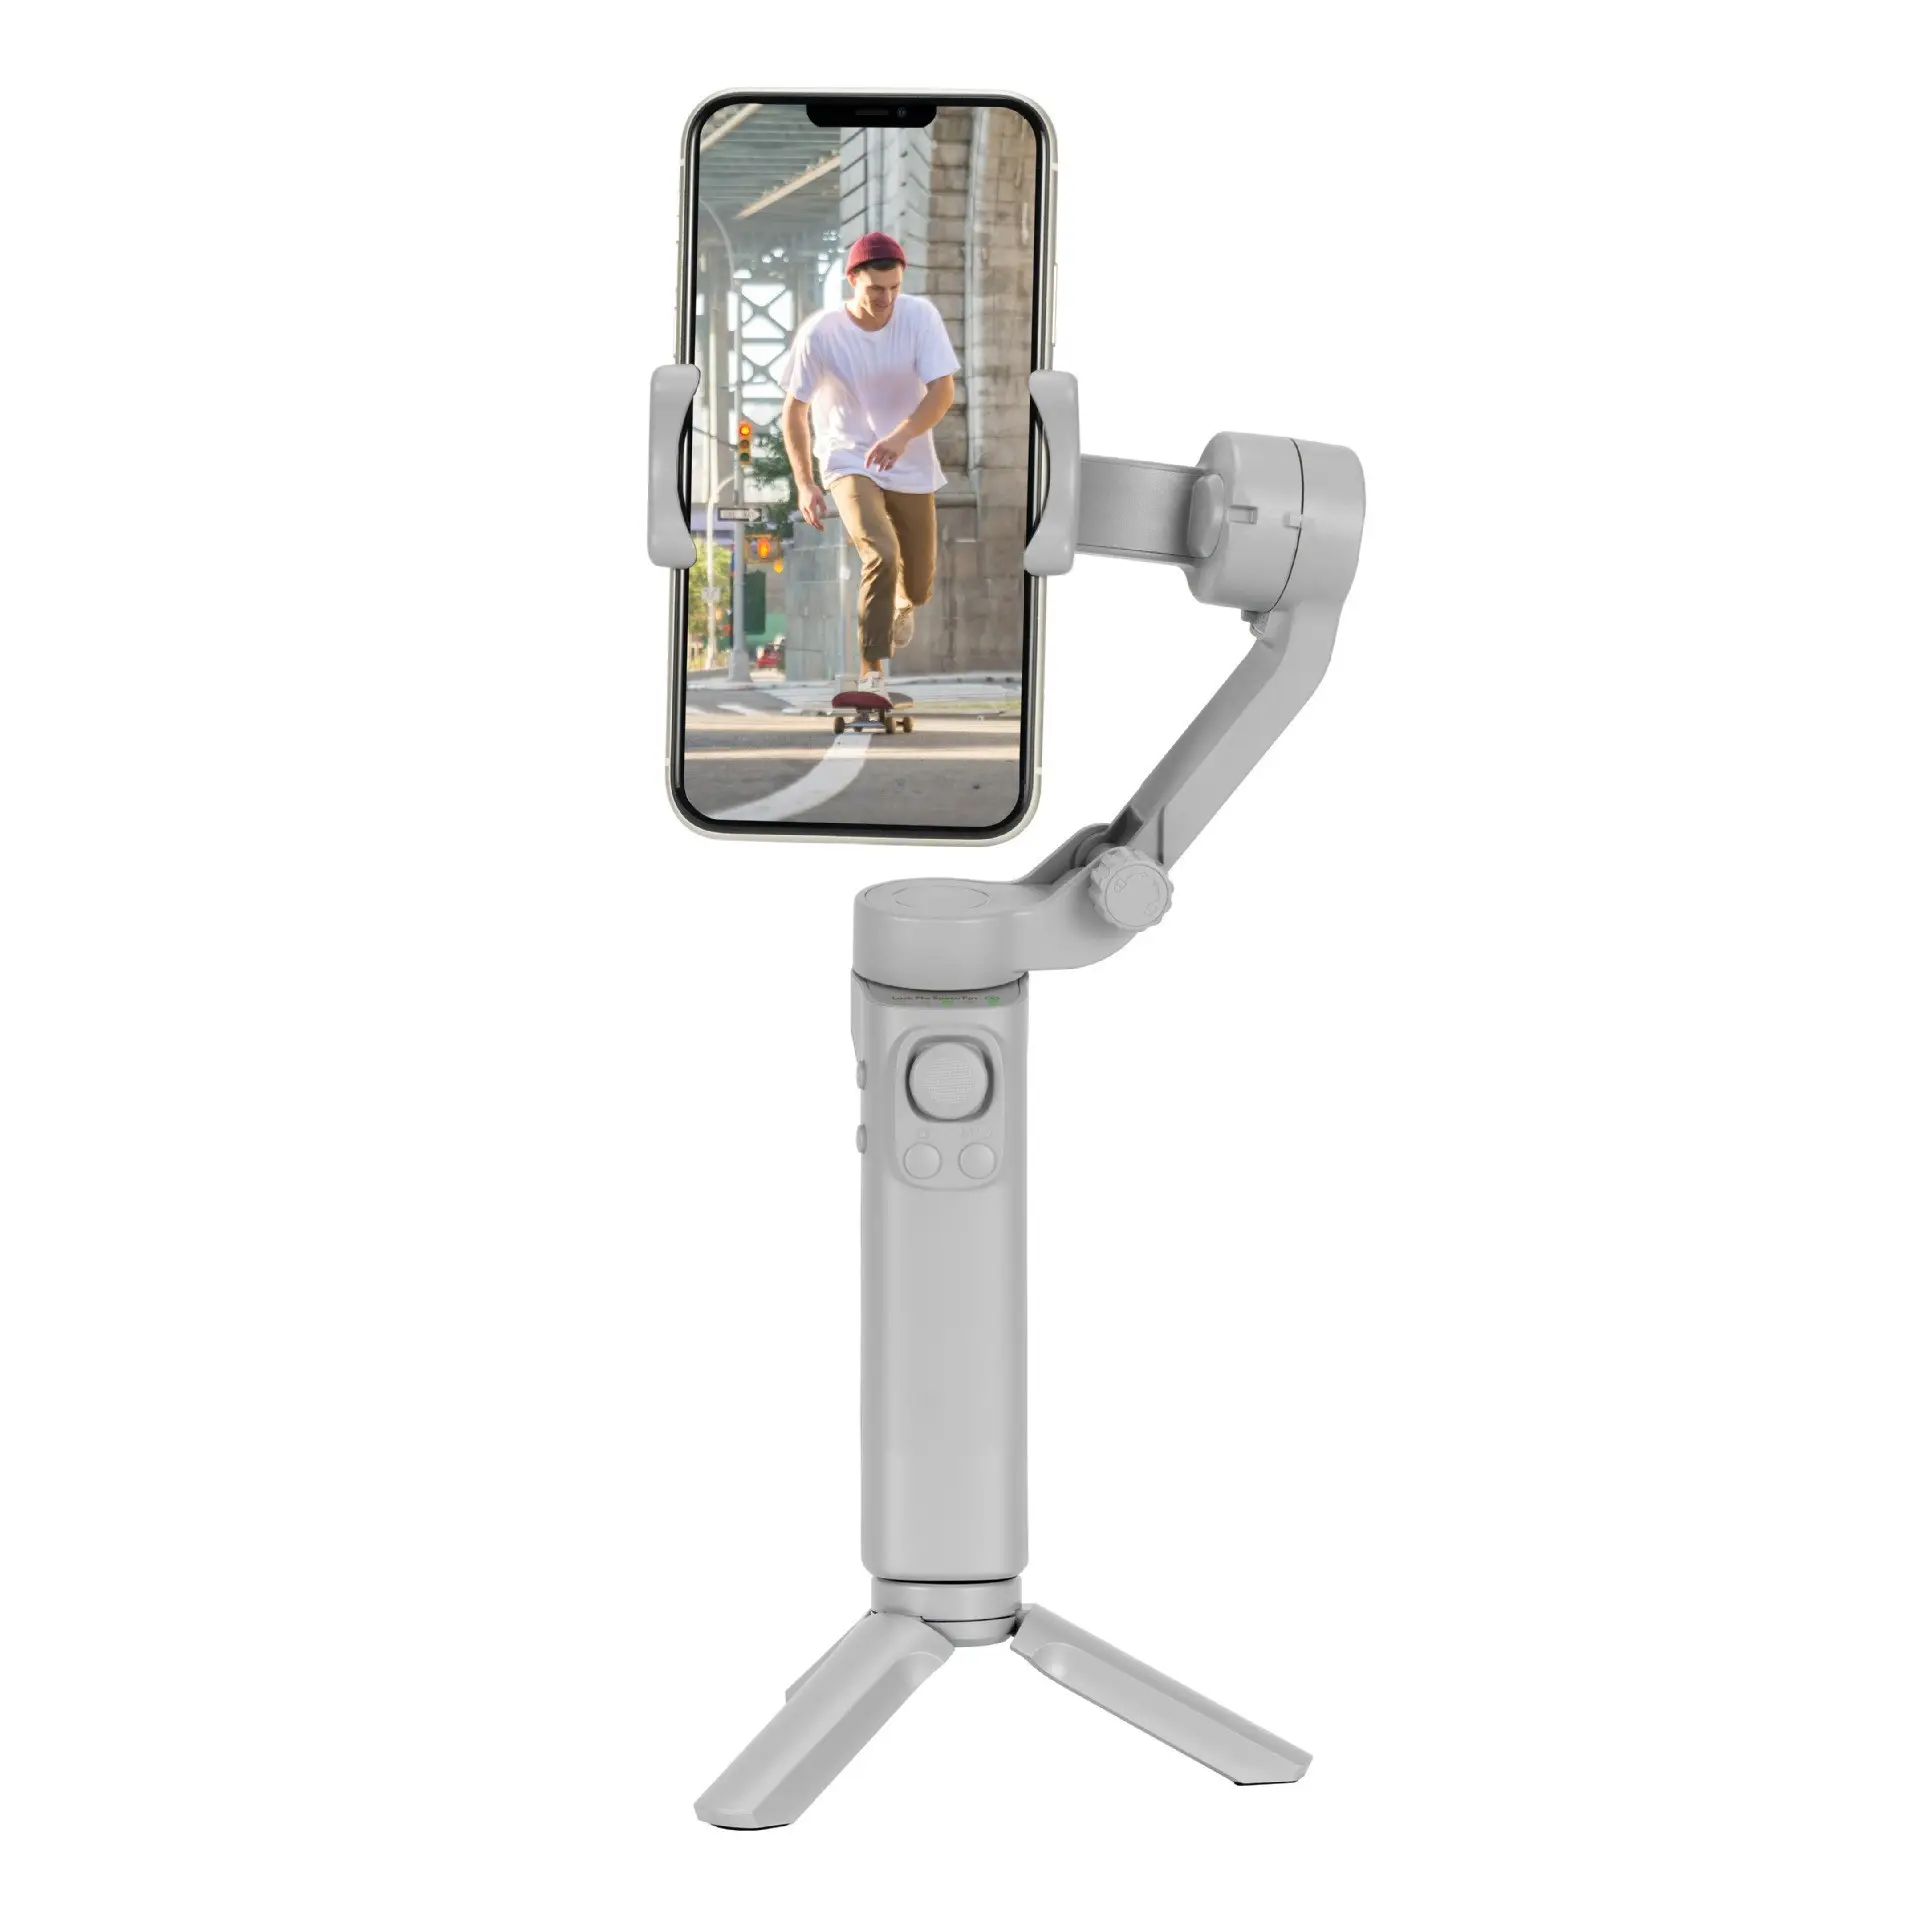 Di động cầm tay chuyên nghiệp 3-trục Trọng lượng nhẹ Gimbal ổn định cho vlogging hành động máy ảnh với kết nối Bluetooth